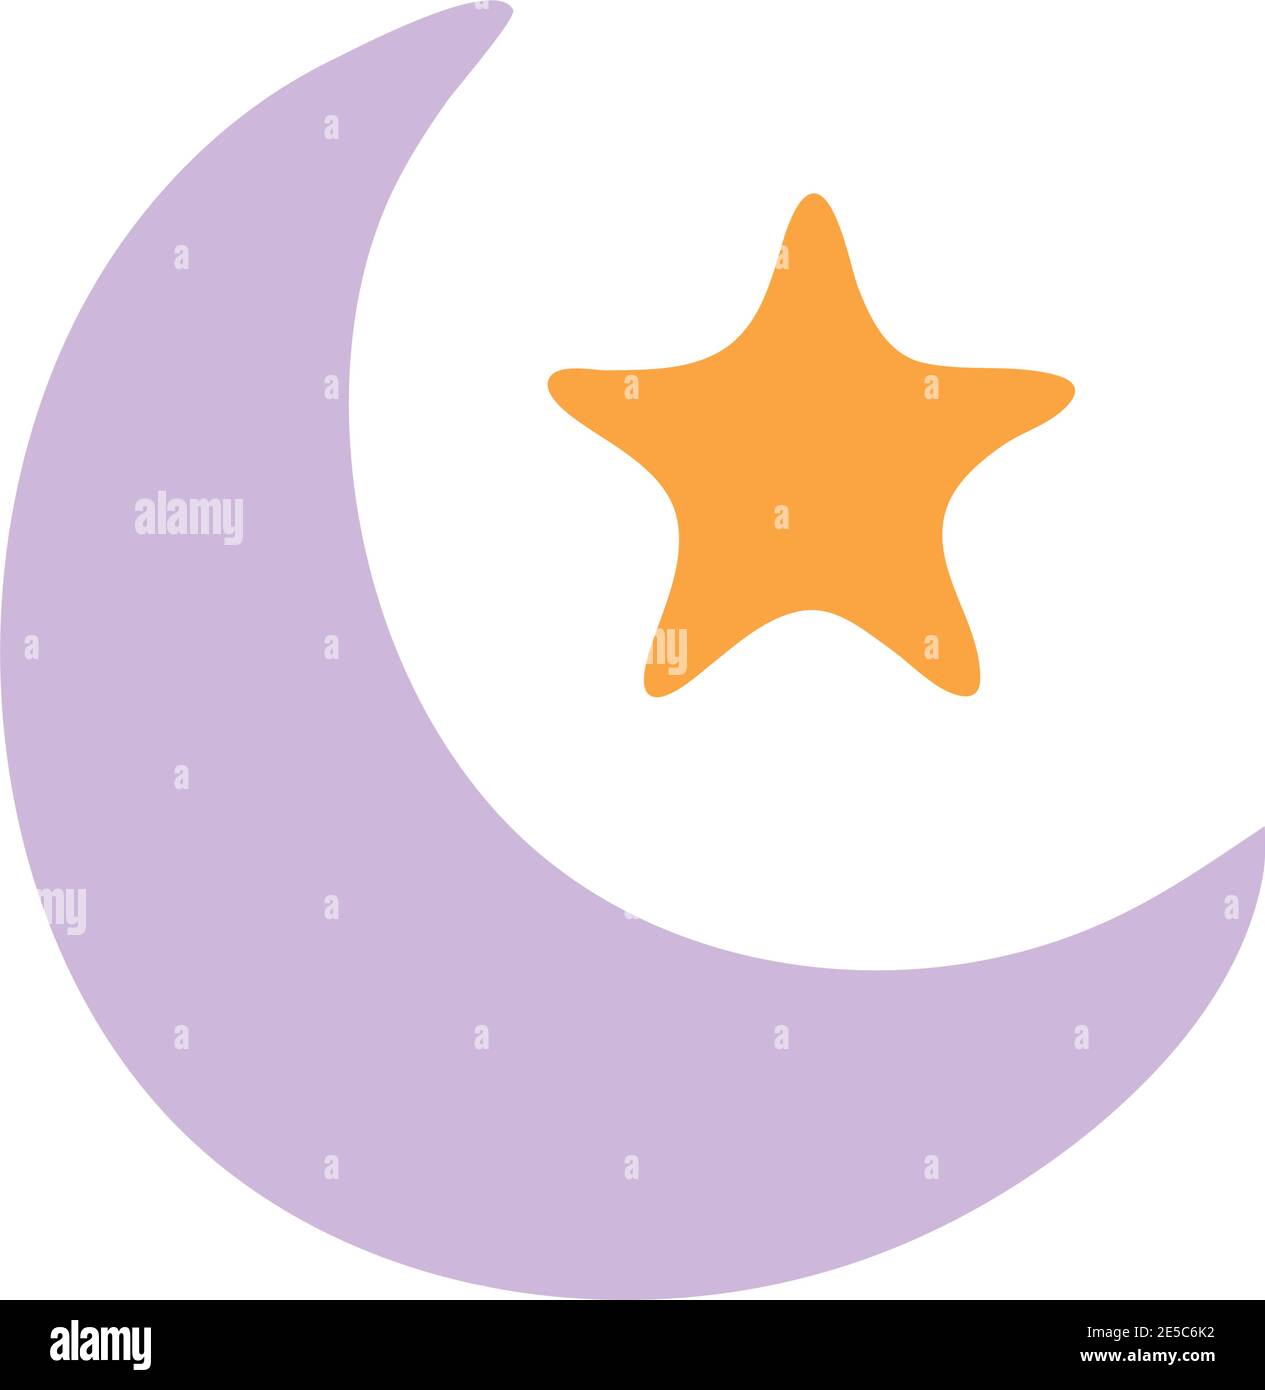 lune violette avec une étoile orange Illustration de Vecteur